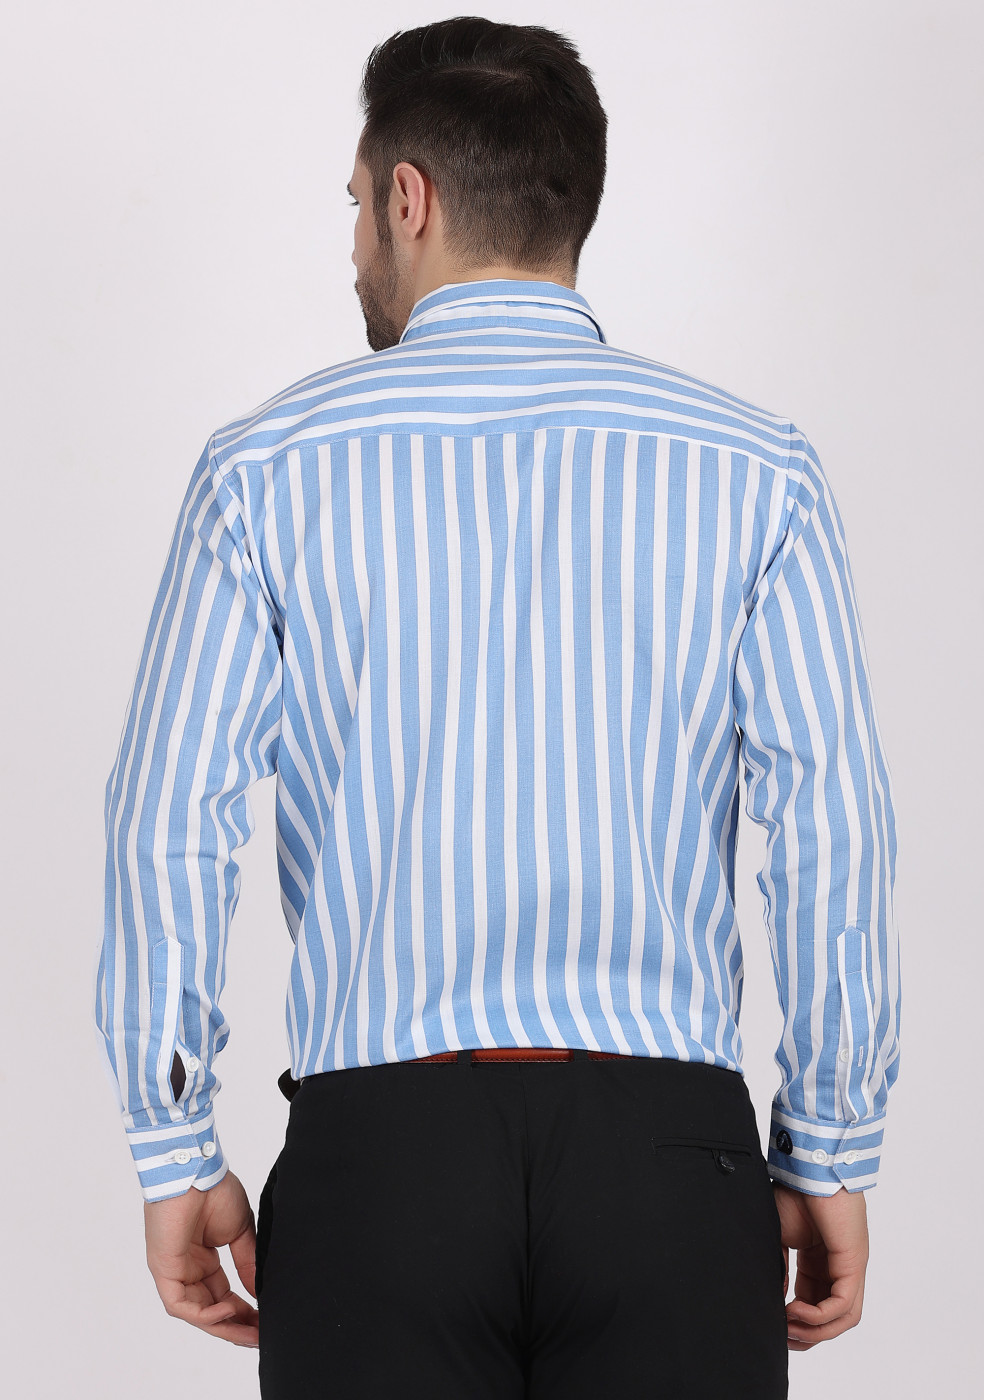 ASHTOM Blue White Lining Shirt For Men